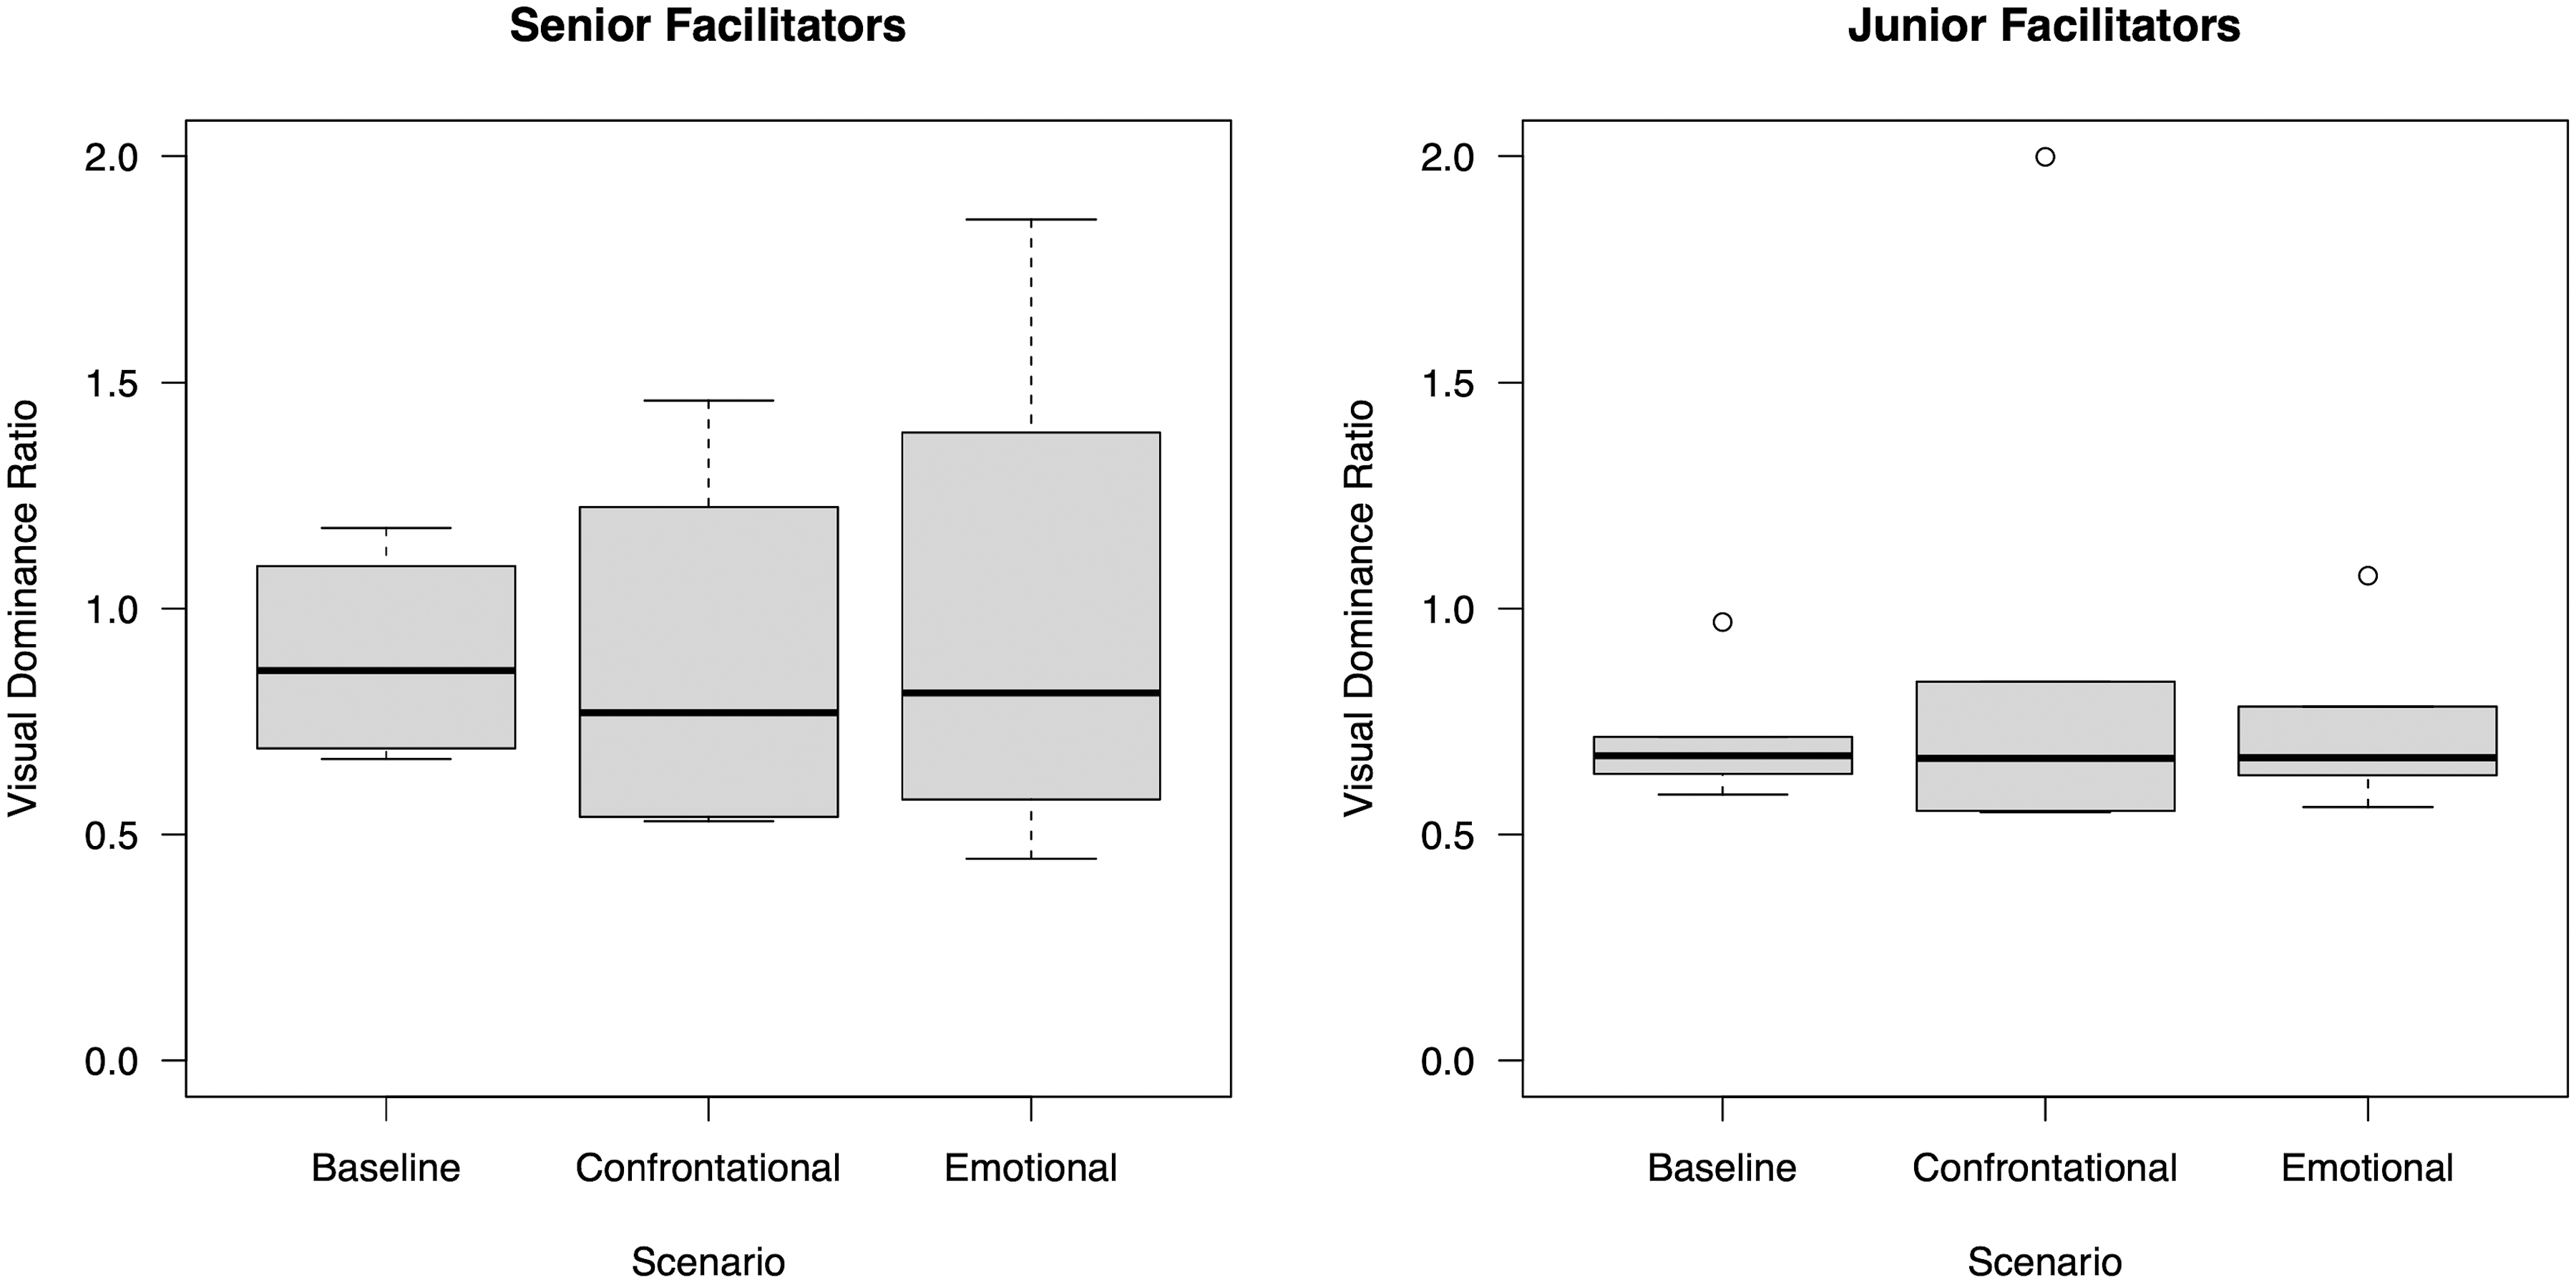 Visual dominance ratio in senior and junior facilitators.